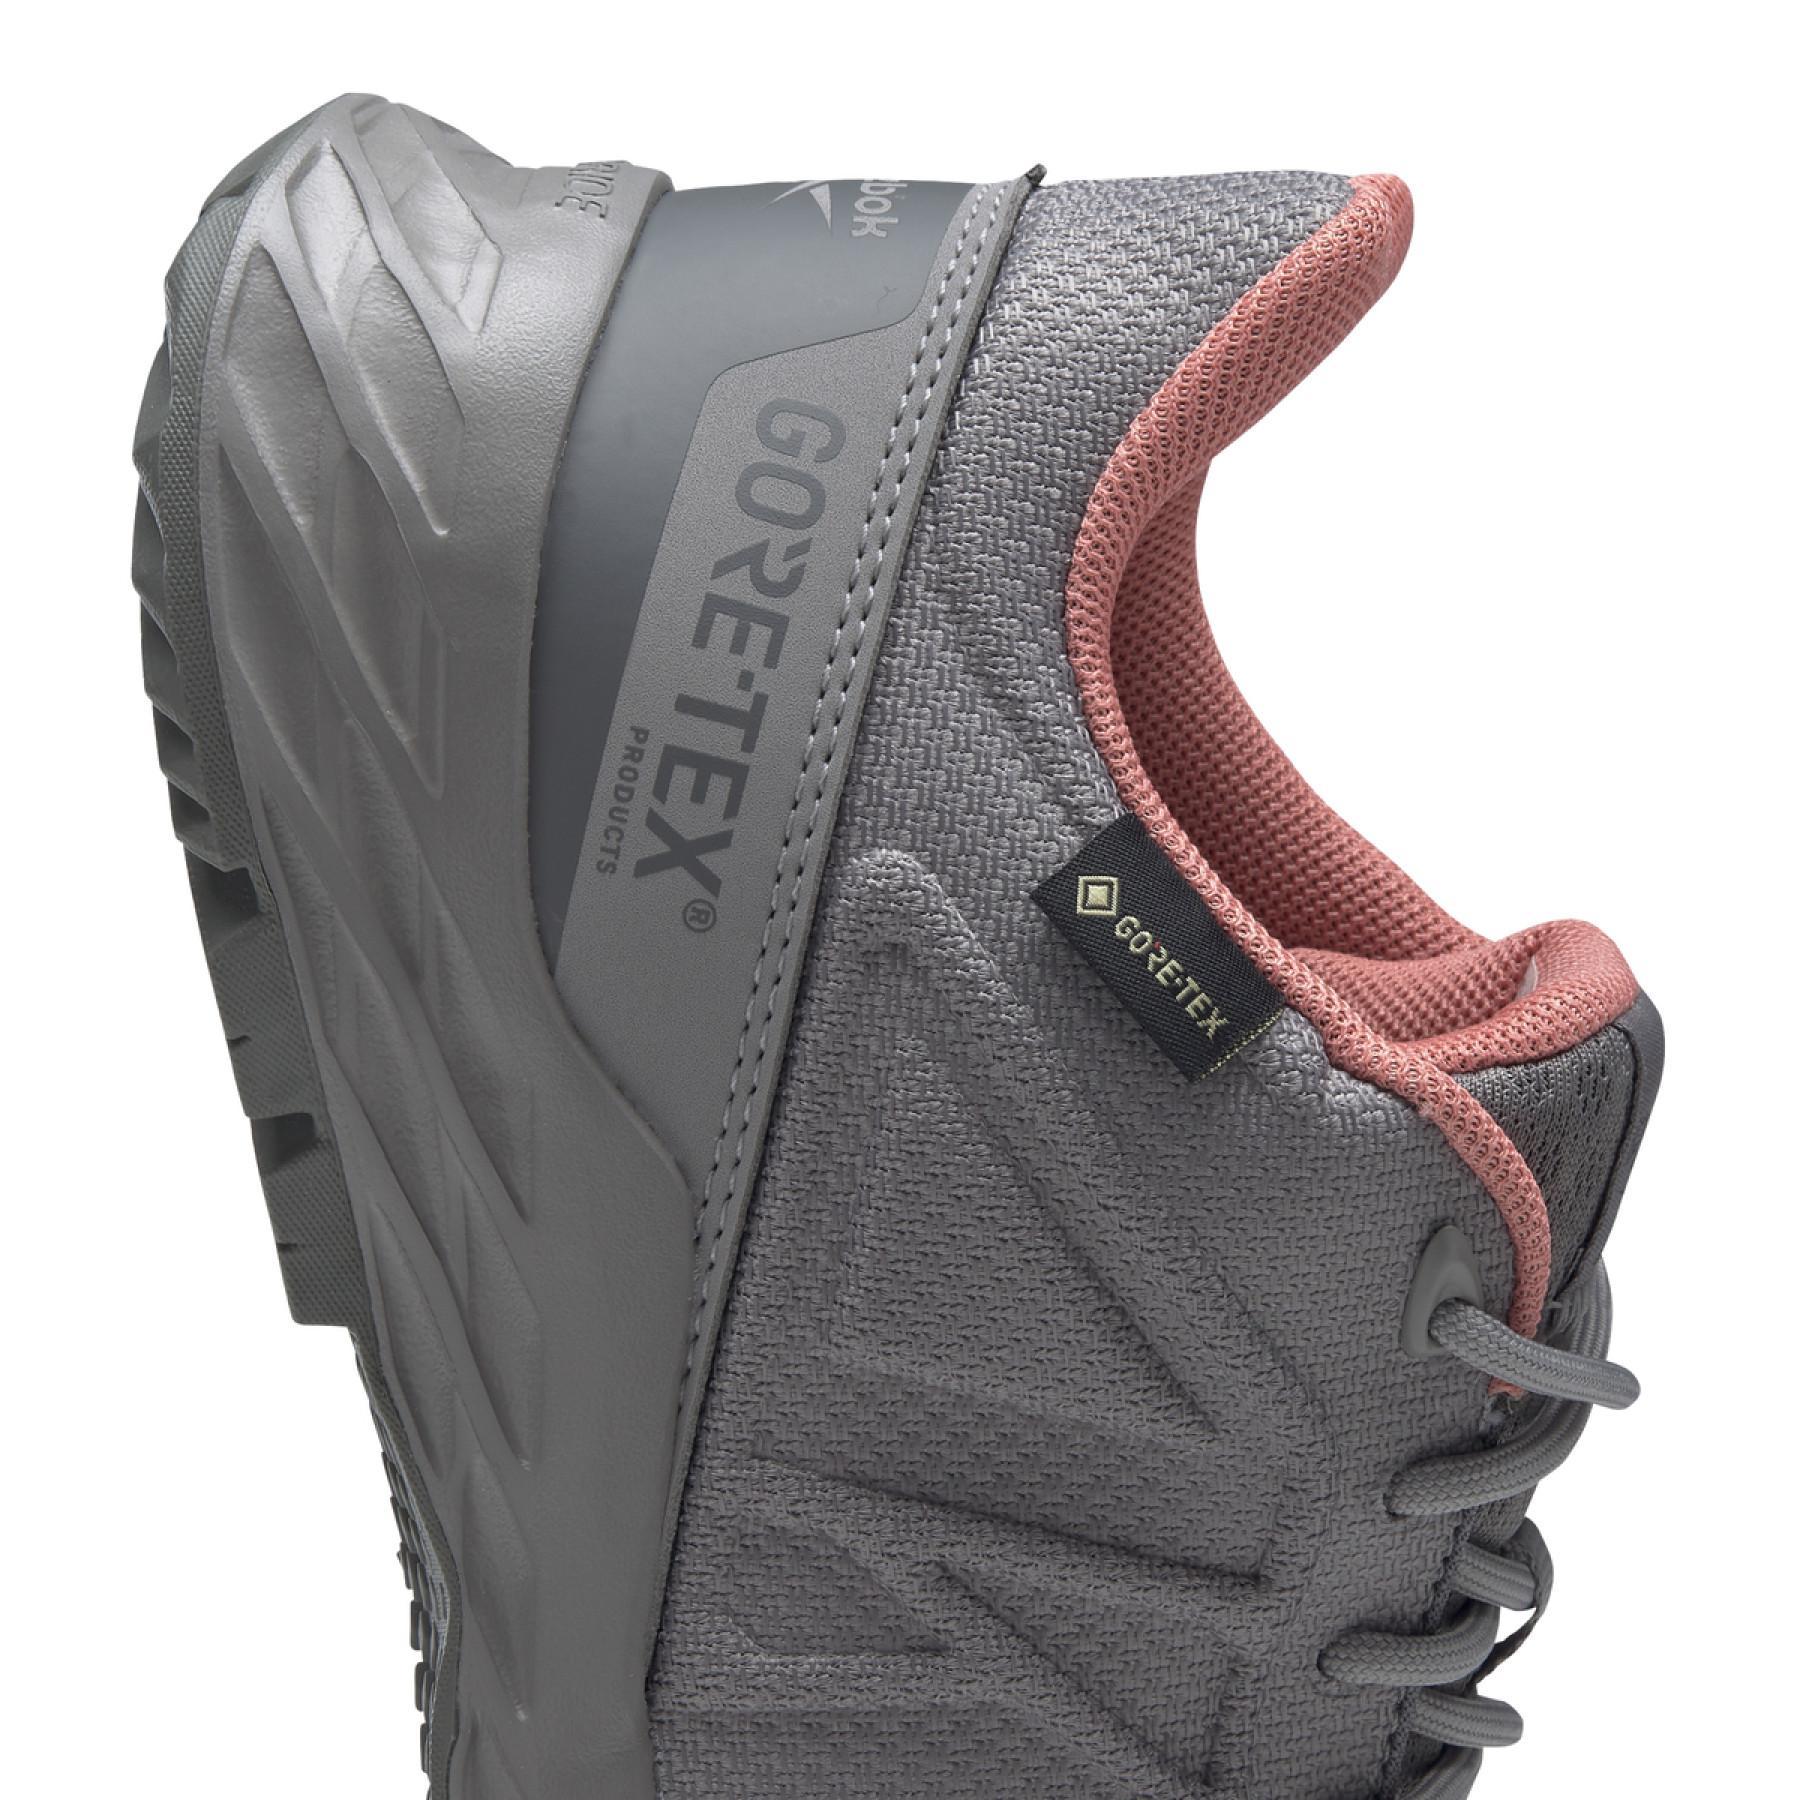 Sapatos de Mulher Reebok Astroride Trail GTX 2.0